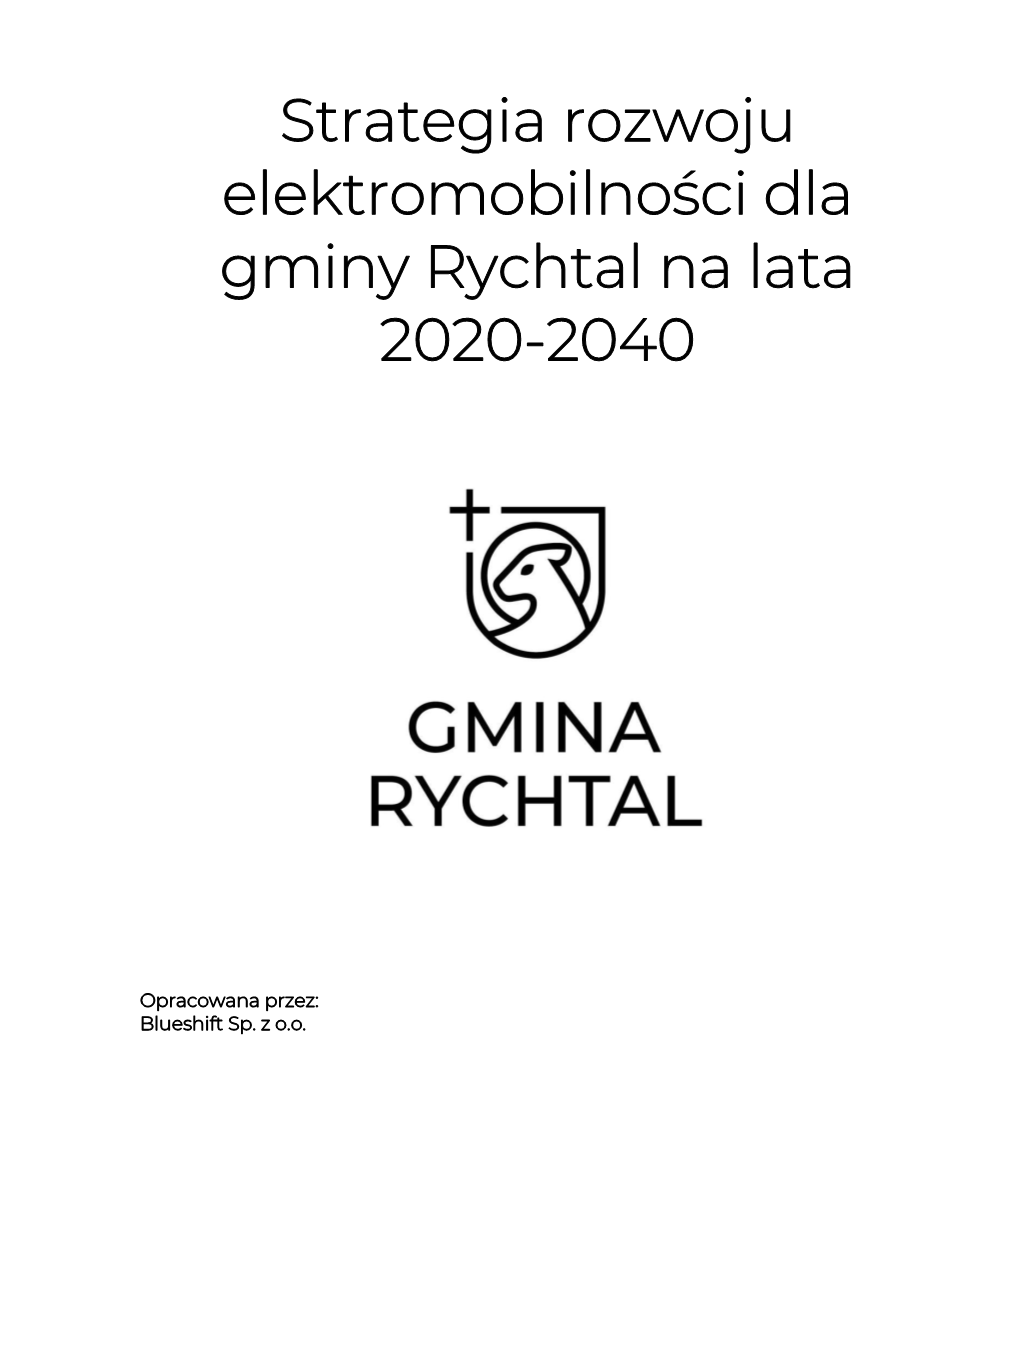 Strategia Rozwoju Elektromobilności Dla Gminy Rychtal Na Lata 2020-2040